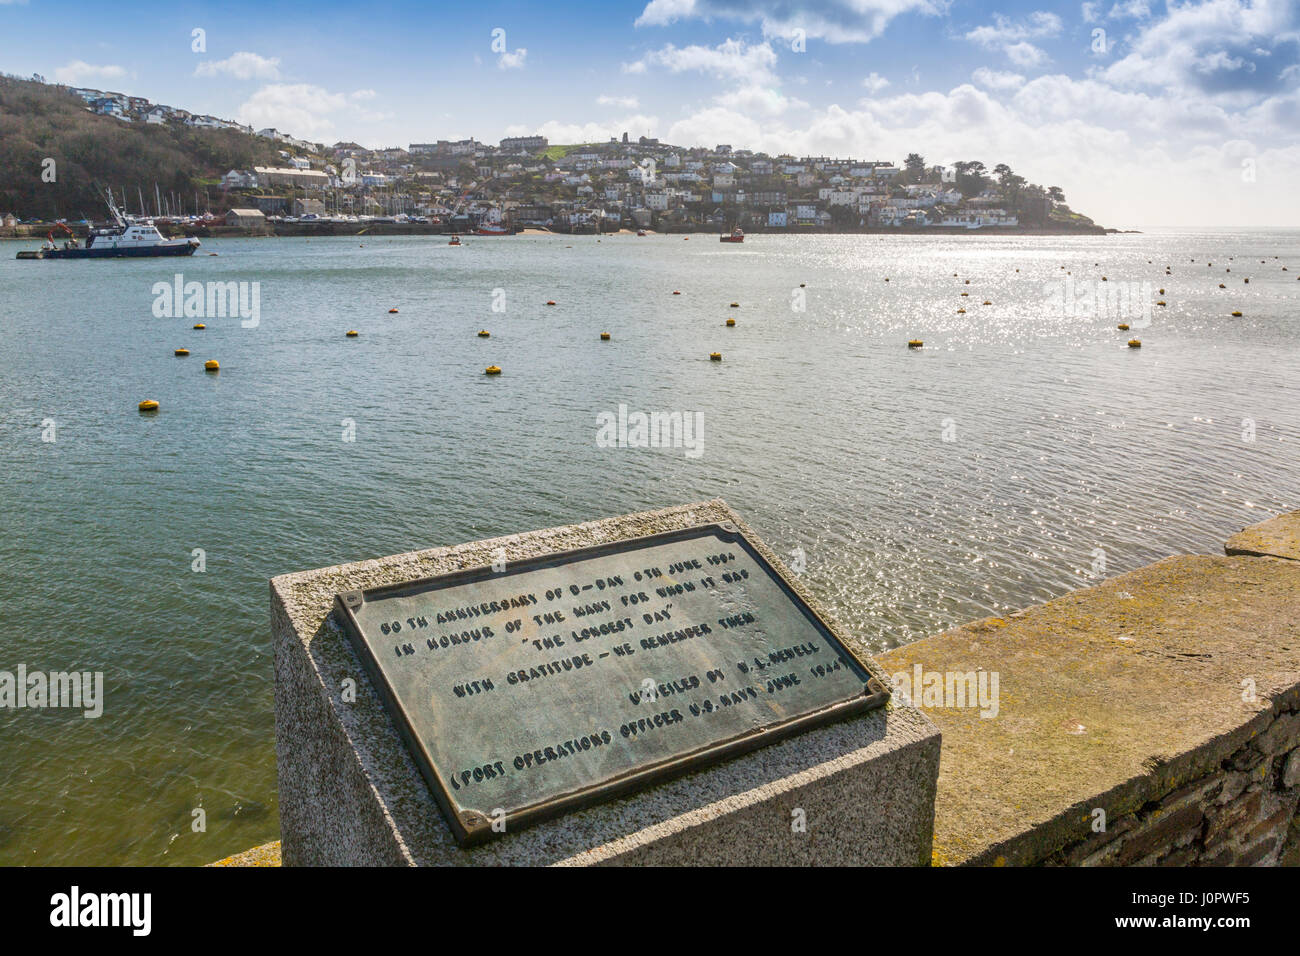 Une plaque souvenir D-Day sur le quai dans le port historique de Fowey, avec Polruan au-delà, Cornwall, Angleterre Banque D'Images